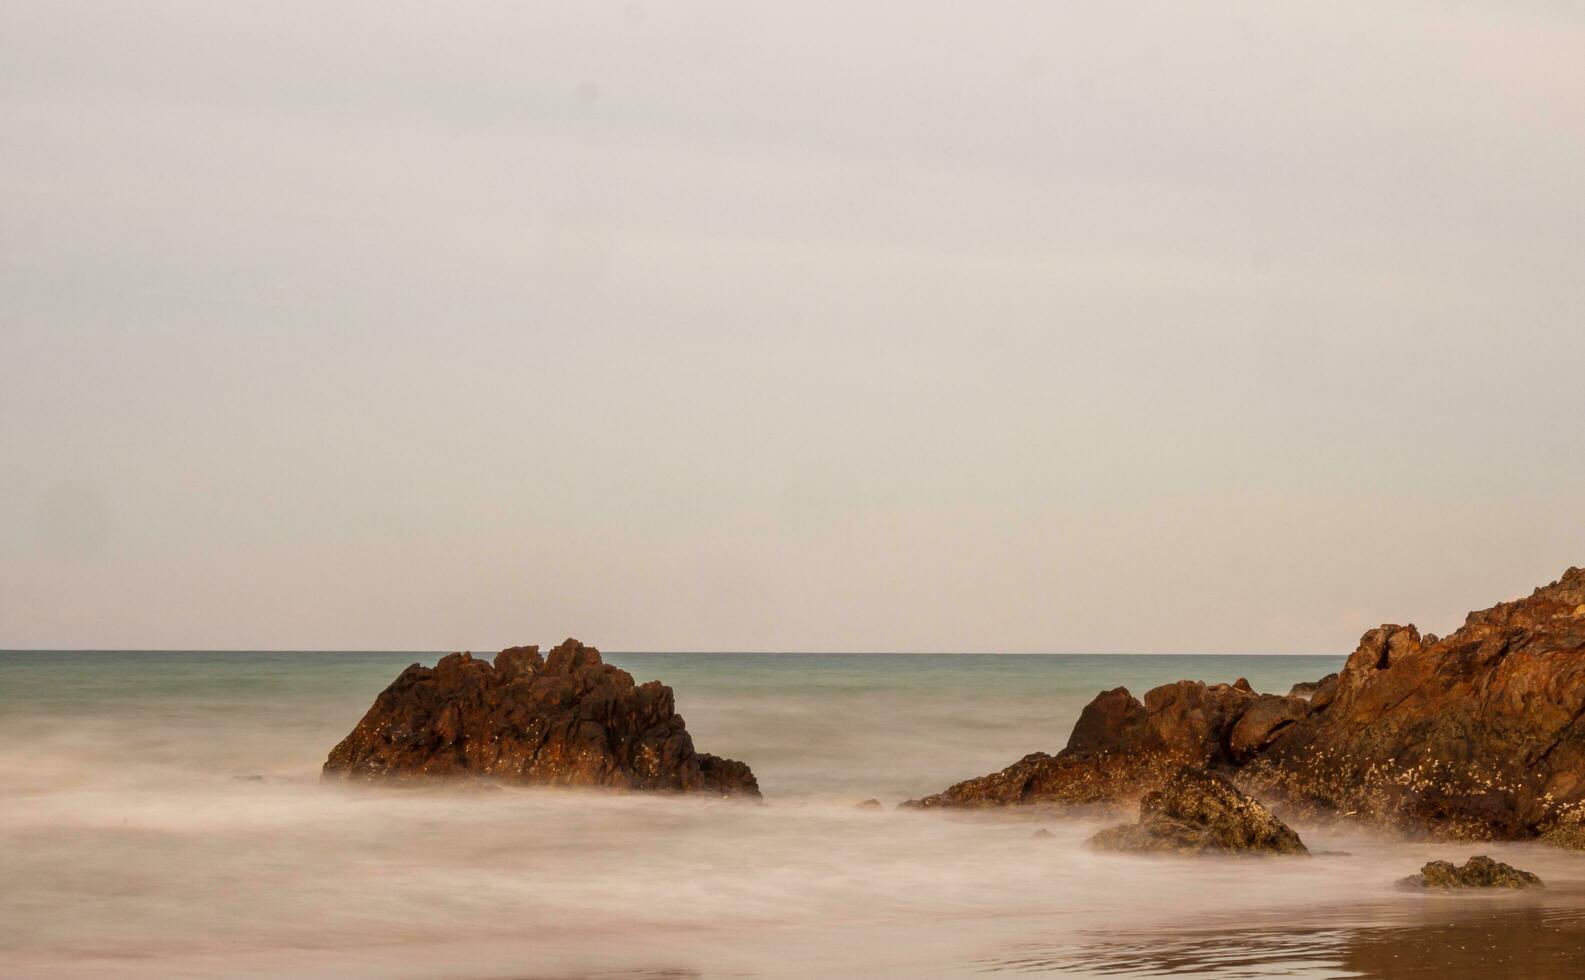 Vorderseite Standpunkt Landschaft Reise Sommer- Meer Felsen Wind Welle cool auf Urlaub Ruhe Meer Küsten Natur tropisch schön Abend Tag beim Rayong Strand Thailand foto